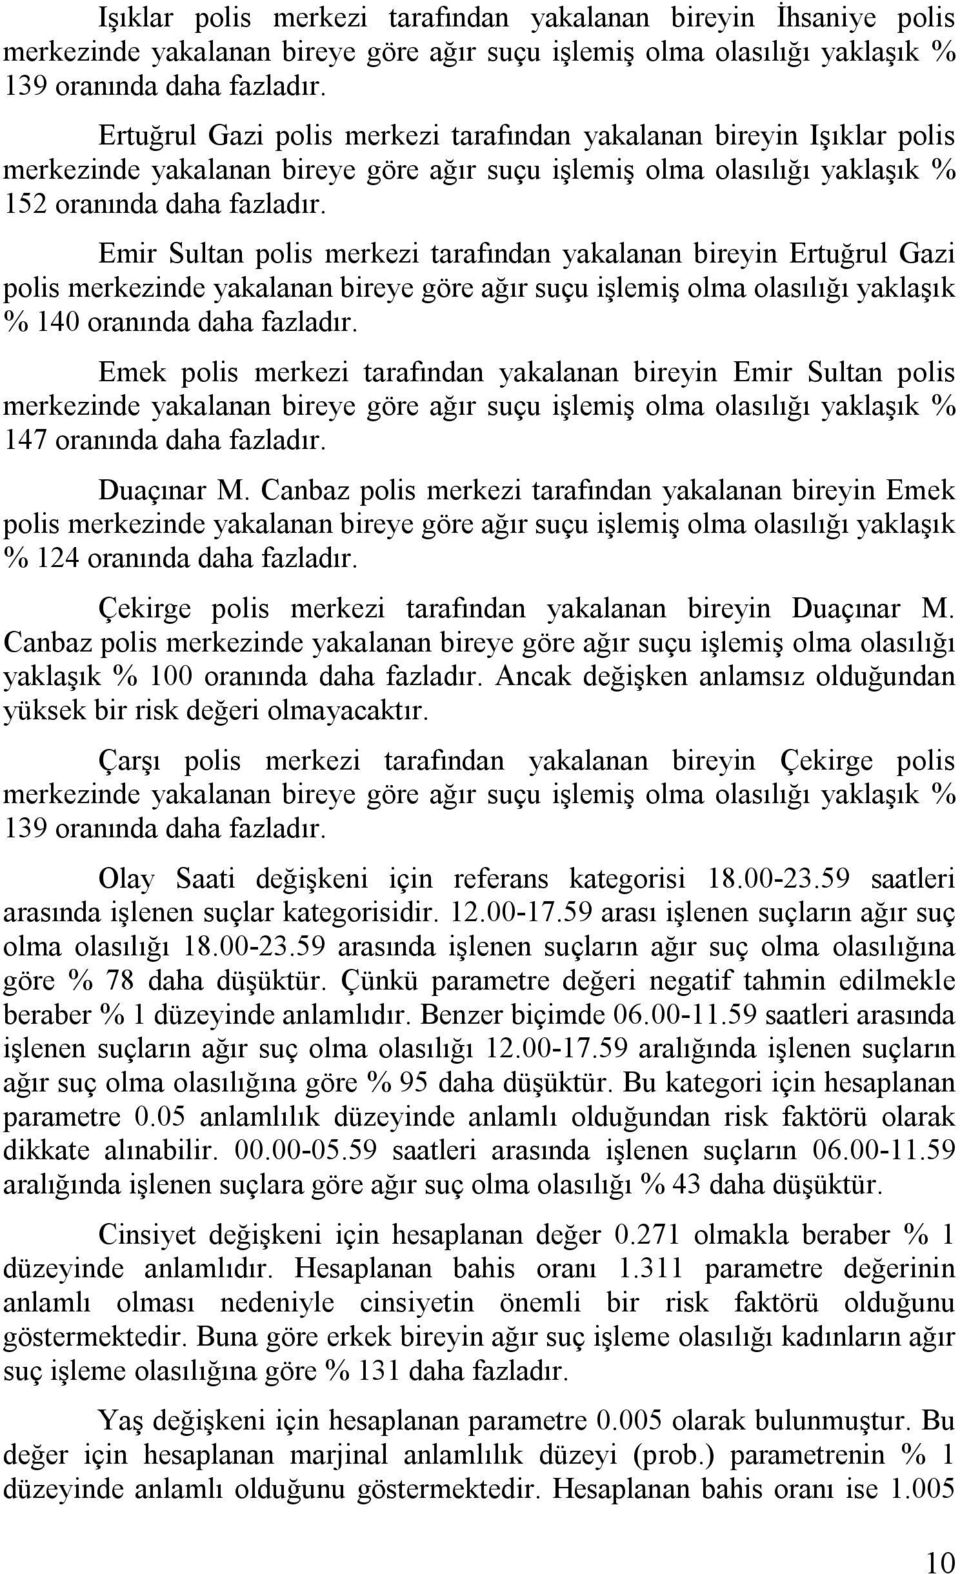 Emr Sultan pols merkez tarafından yakalanan breyn Ertuğrul Gaz pols merkeznde yakalanan breye göre ağır suçu şlemş olma olasılığı yaklaşık % 40 oranında daha fazladır.